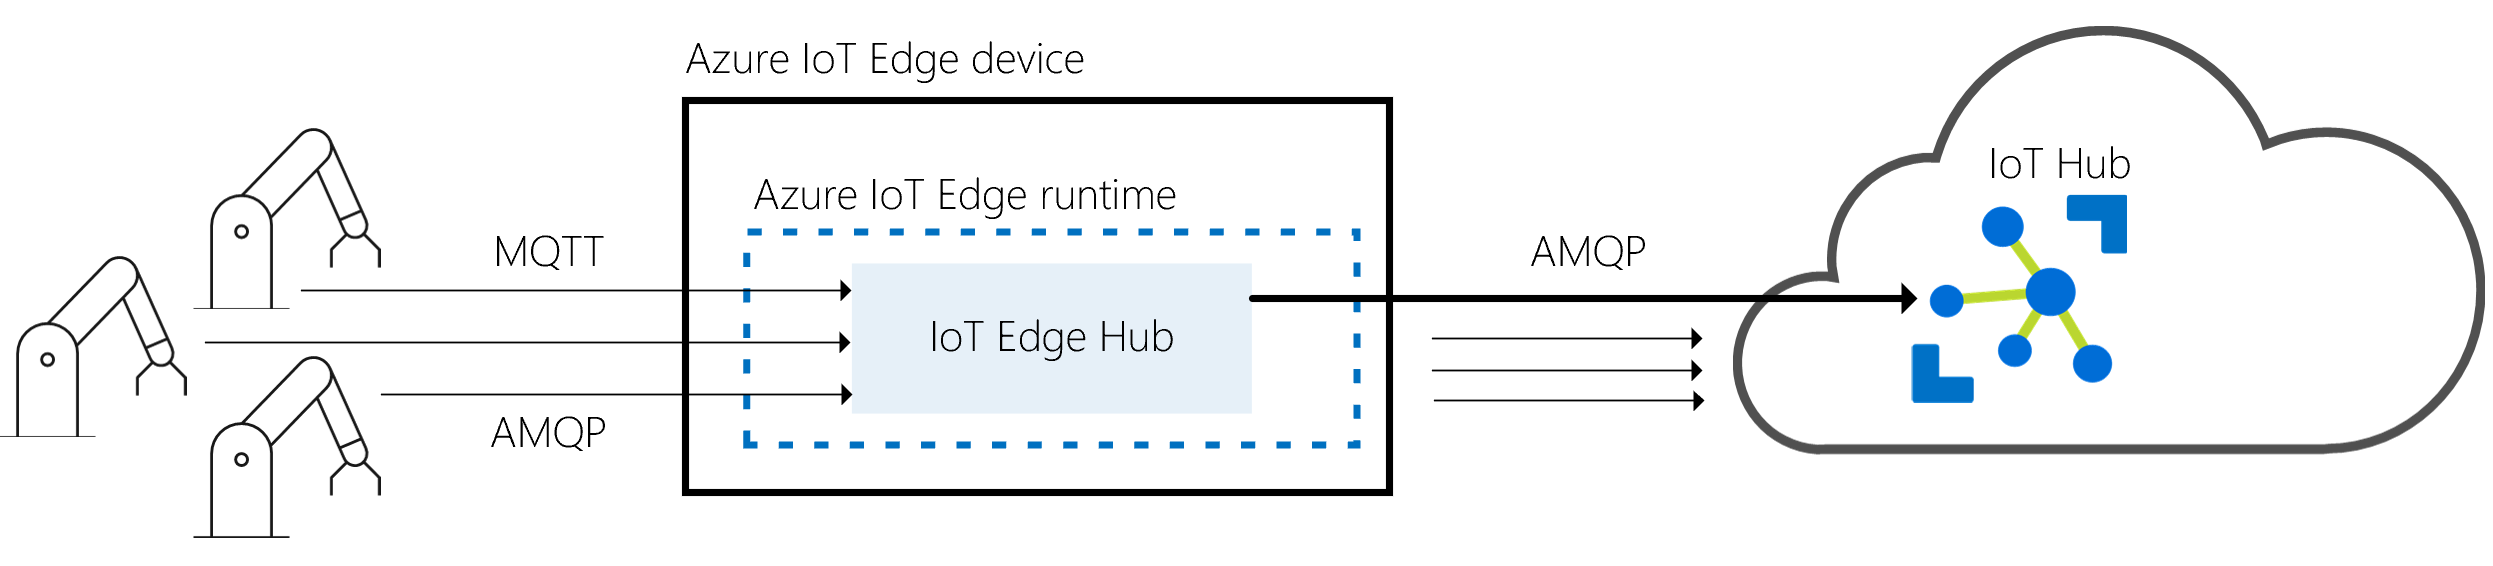 El centro de IoT Edge es una puerta de enlace entre los dispositivos físicos e IoT Hub